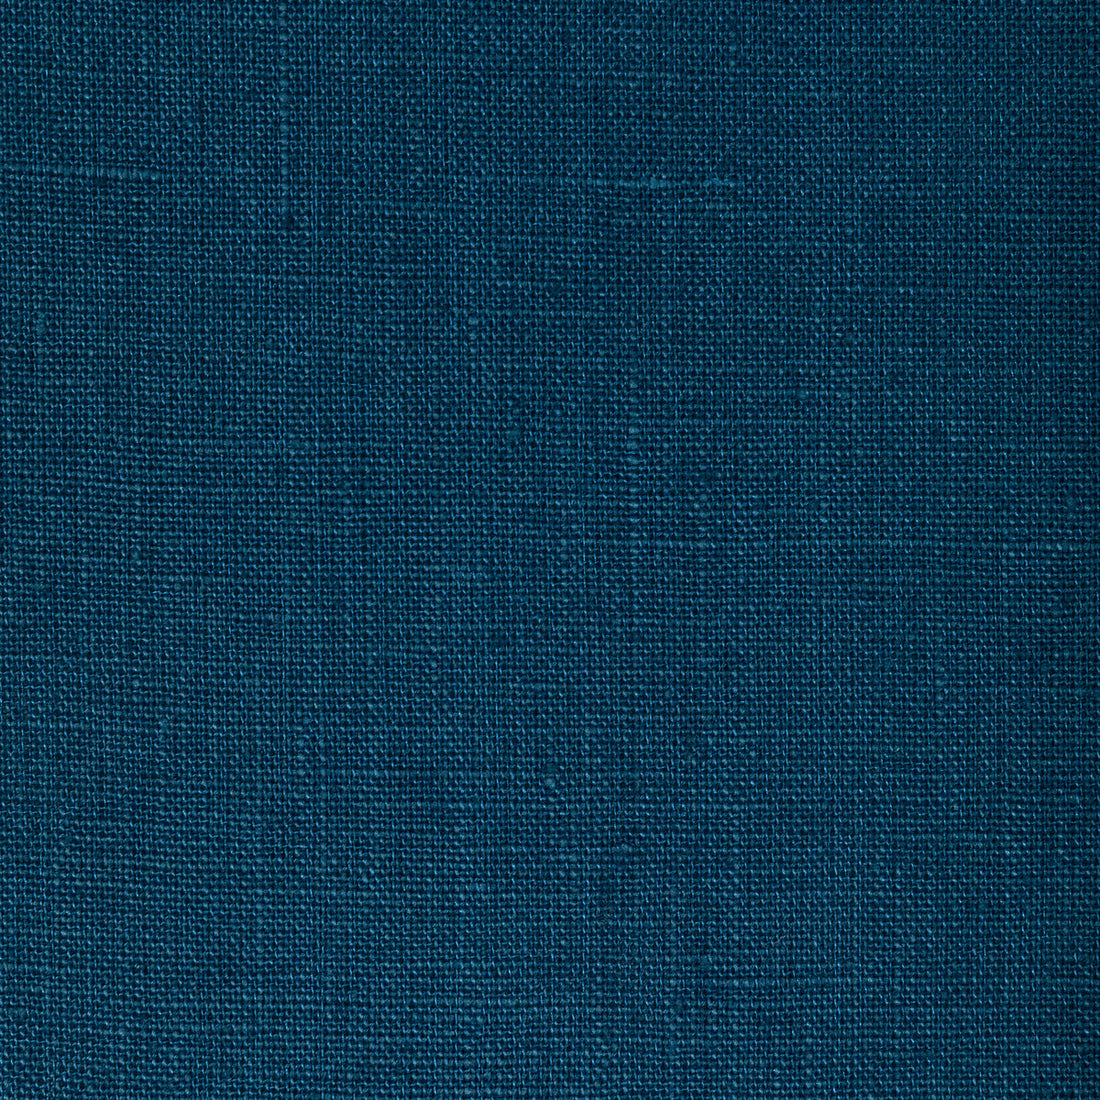 Kravet Basics fabric in 32344-505 color - pattern 32344.505.0 - by Kravet Basics